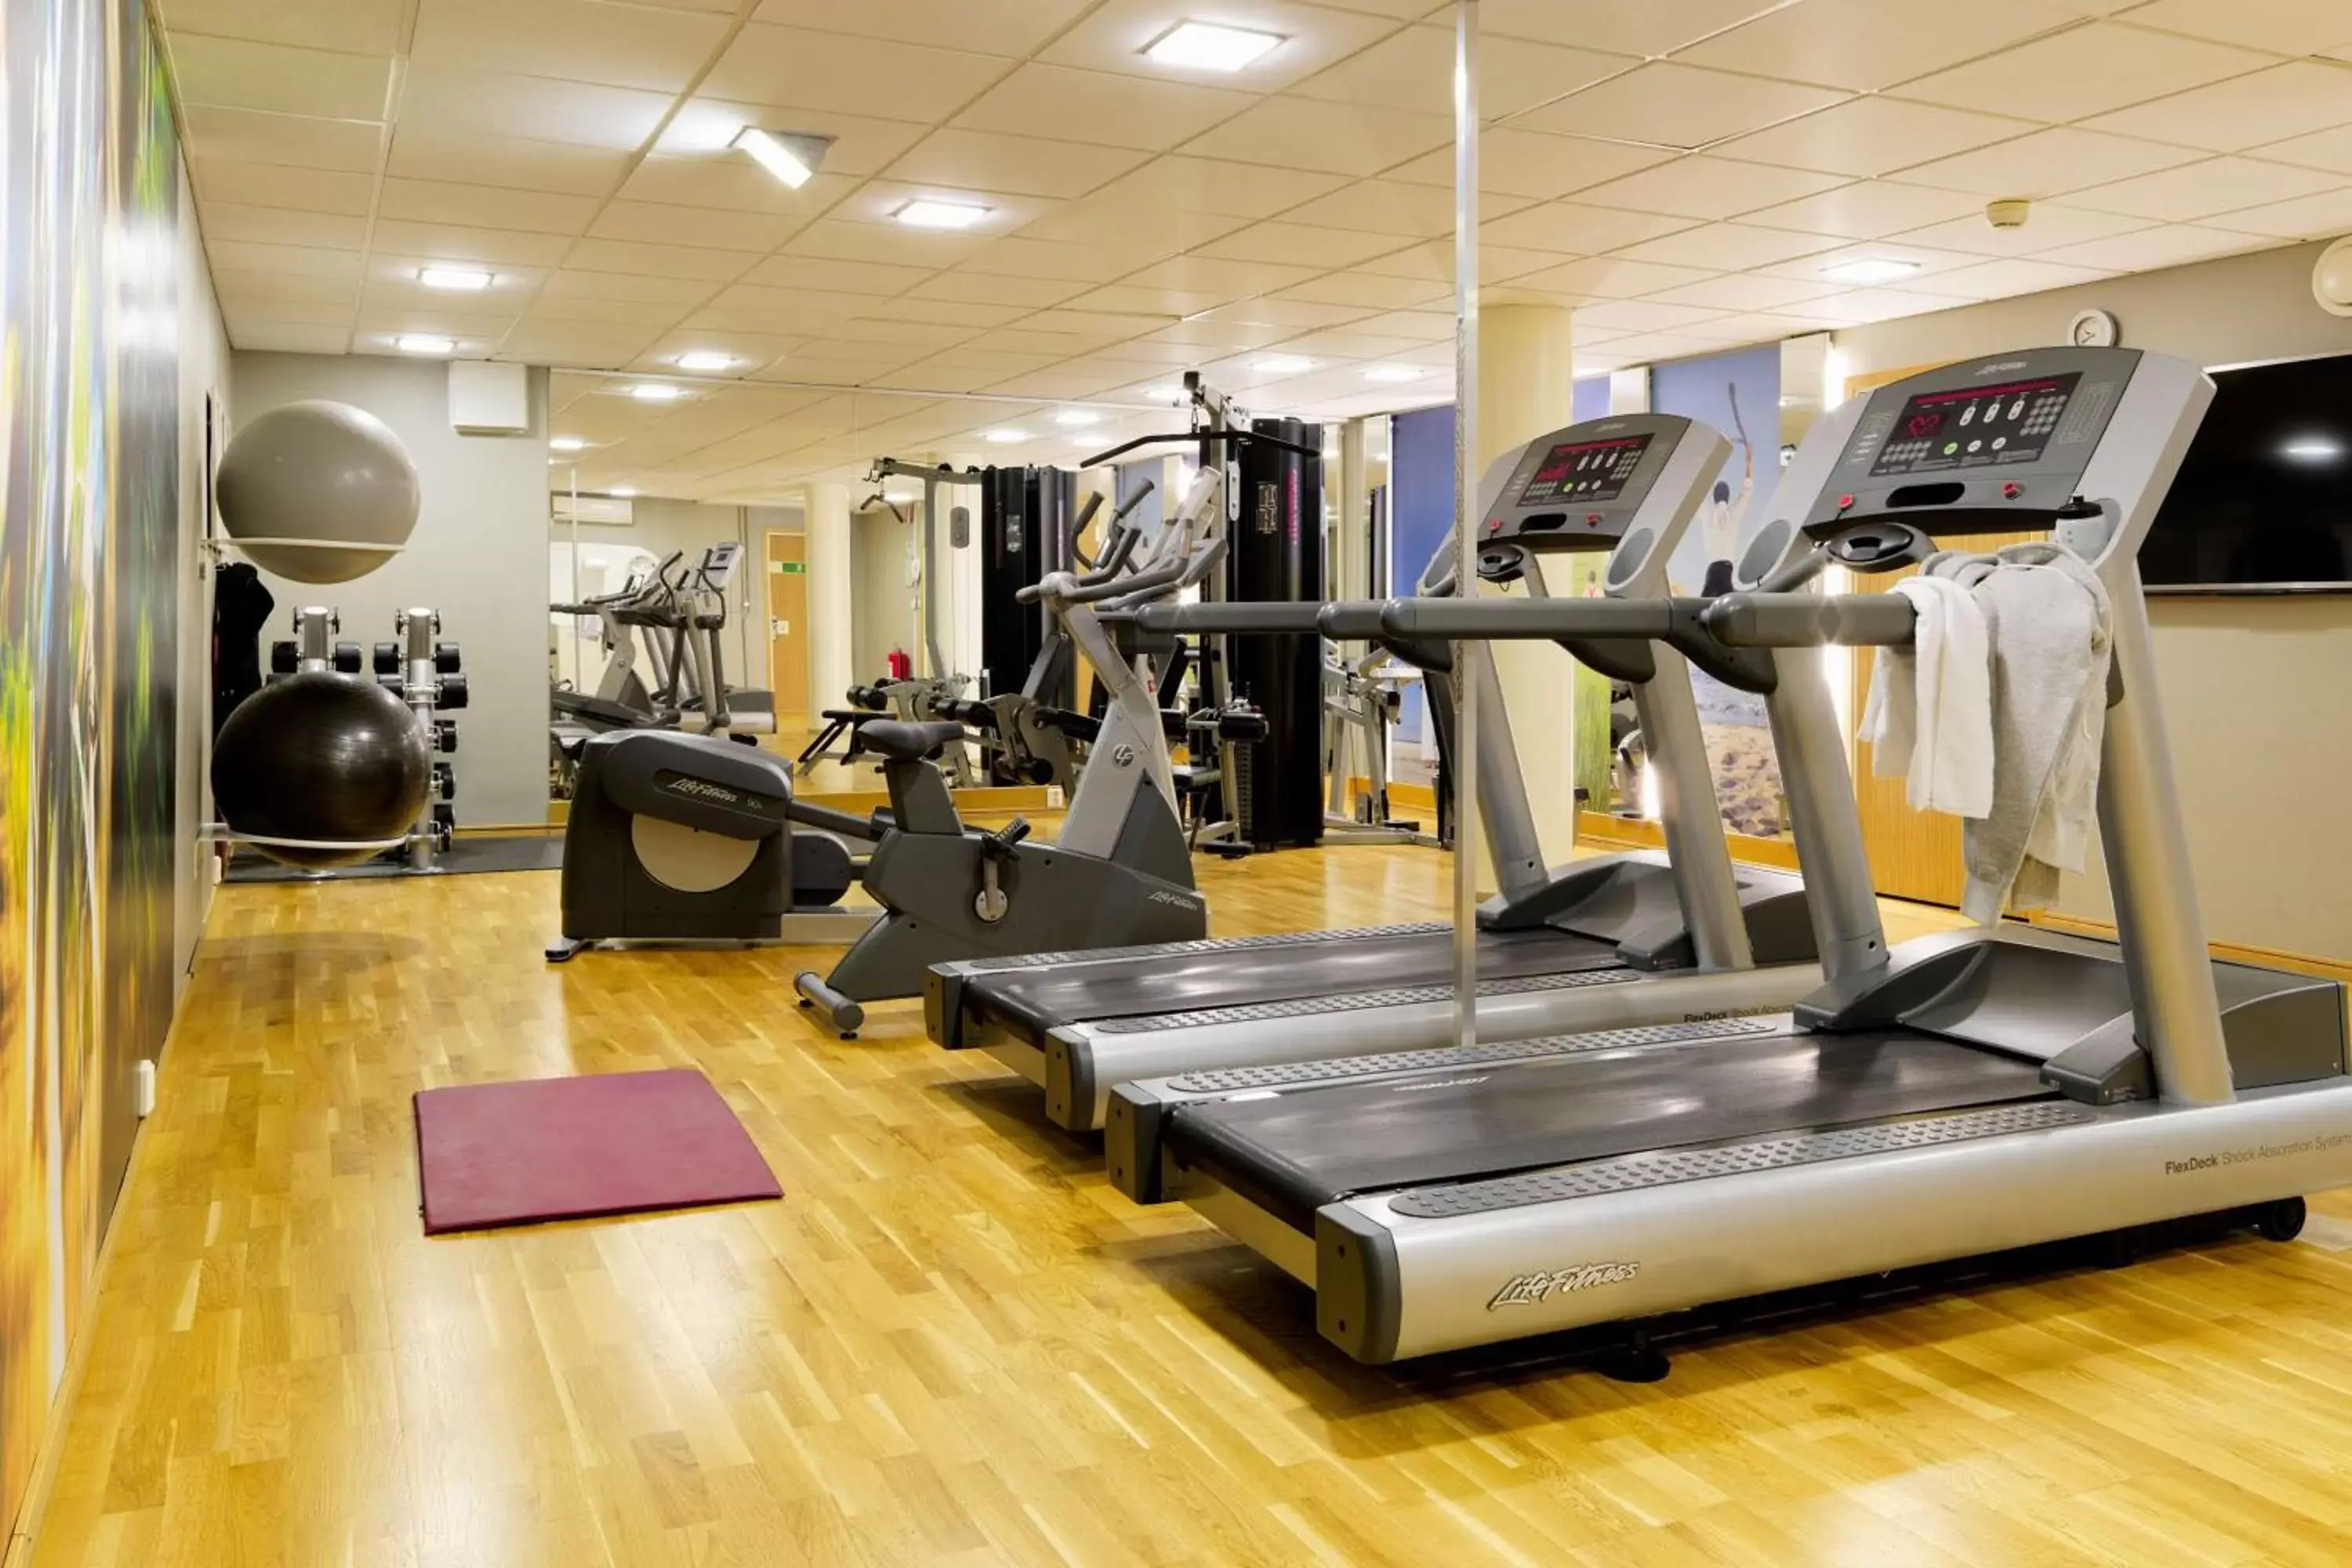 Fitness centre/facilities, Fitness Center/Facilities in Scandic Örebro Väst